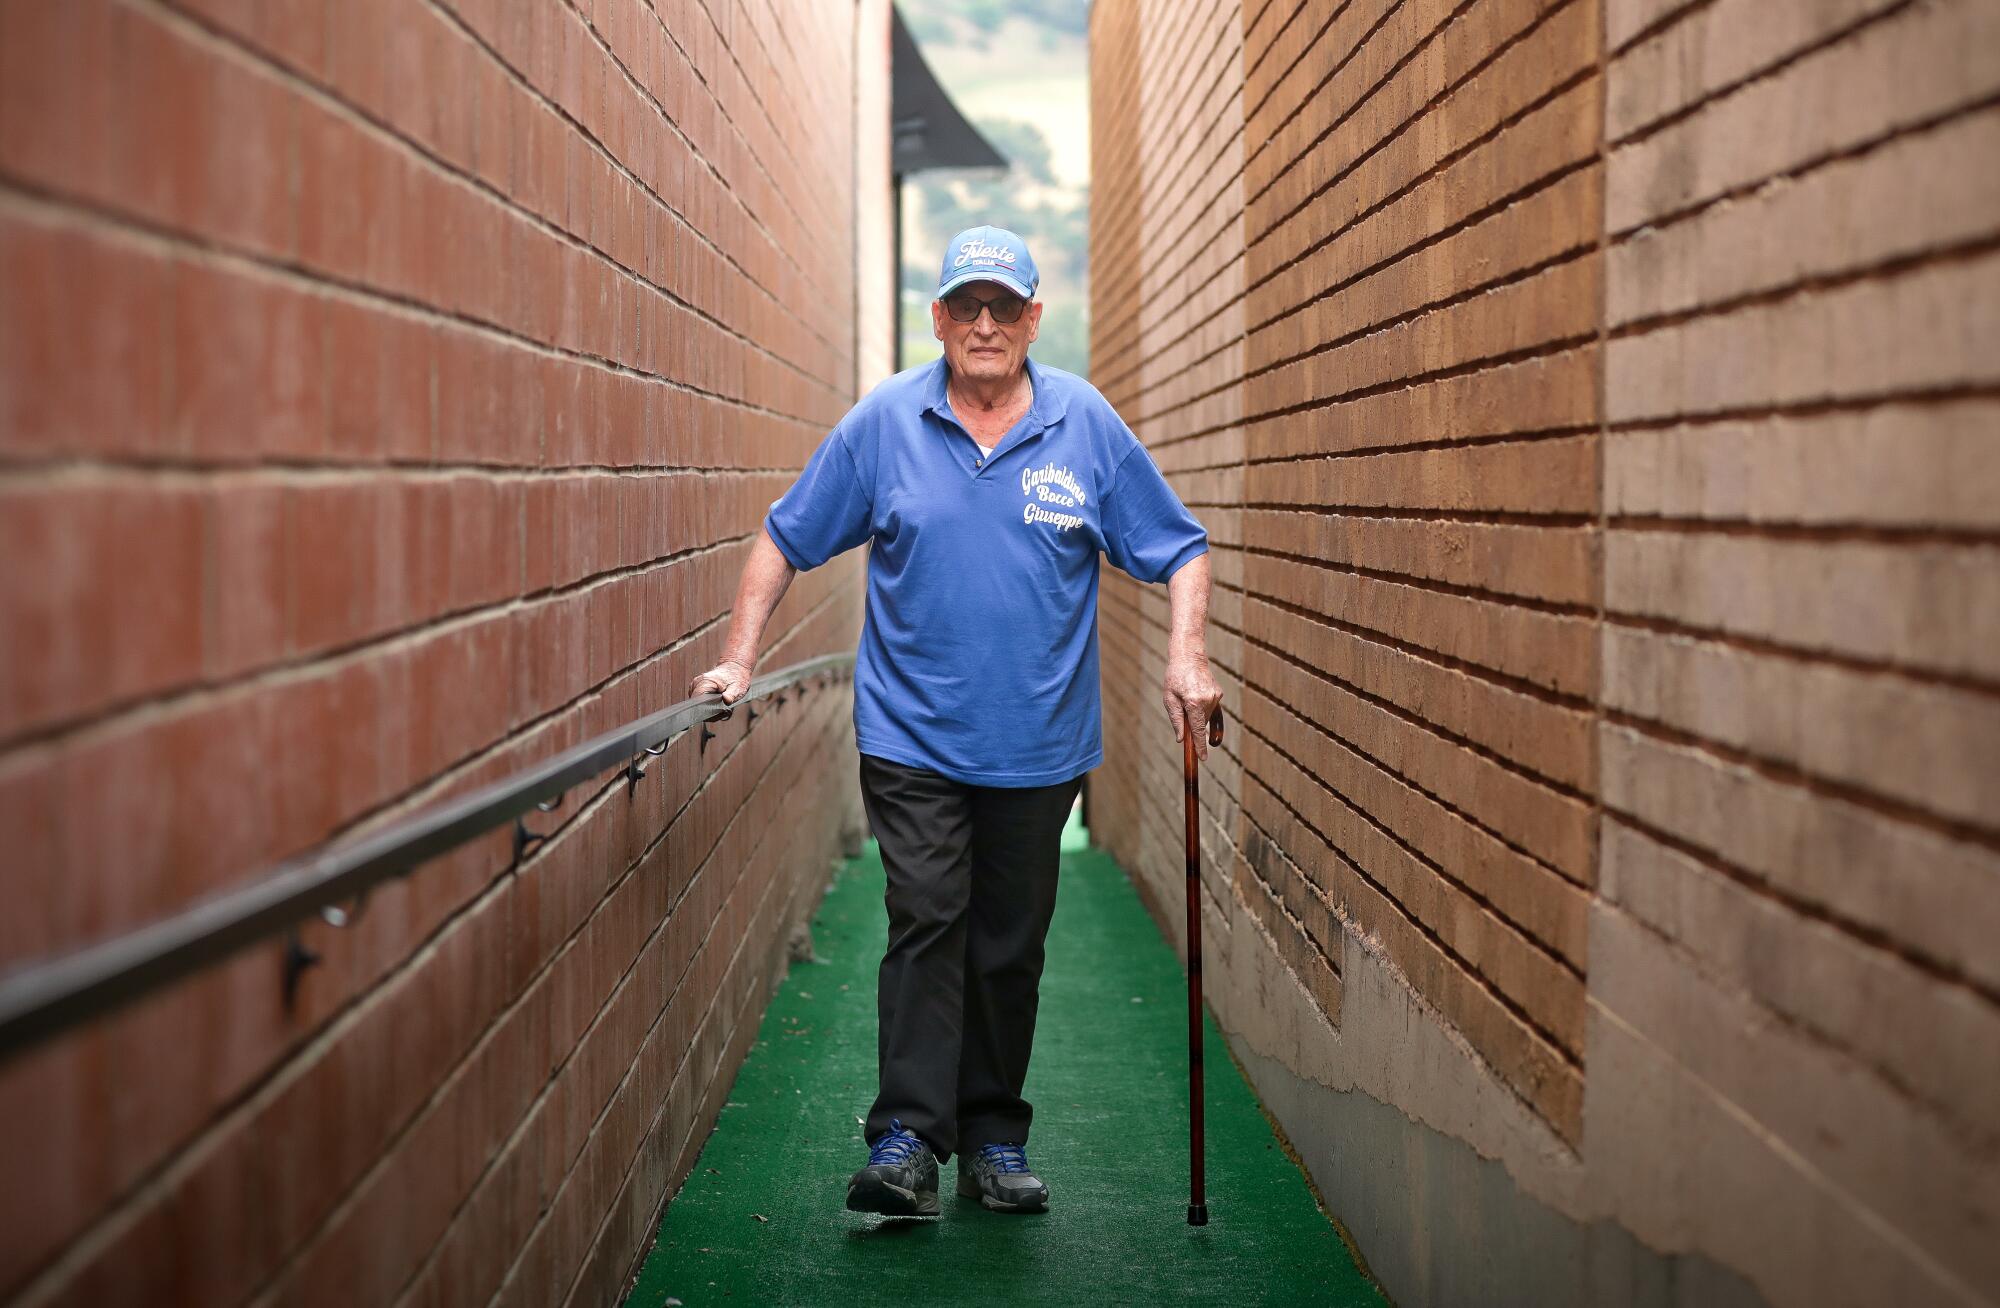 A man walks along a pathway between brick walls to play bocce ball.